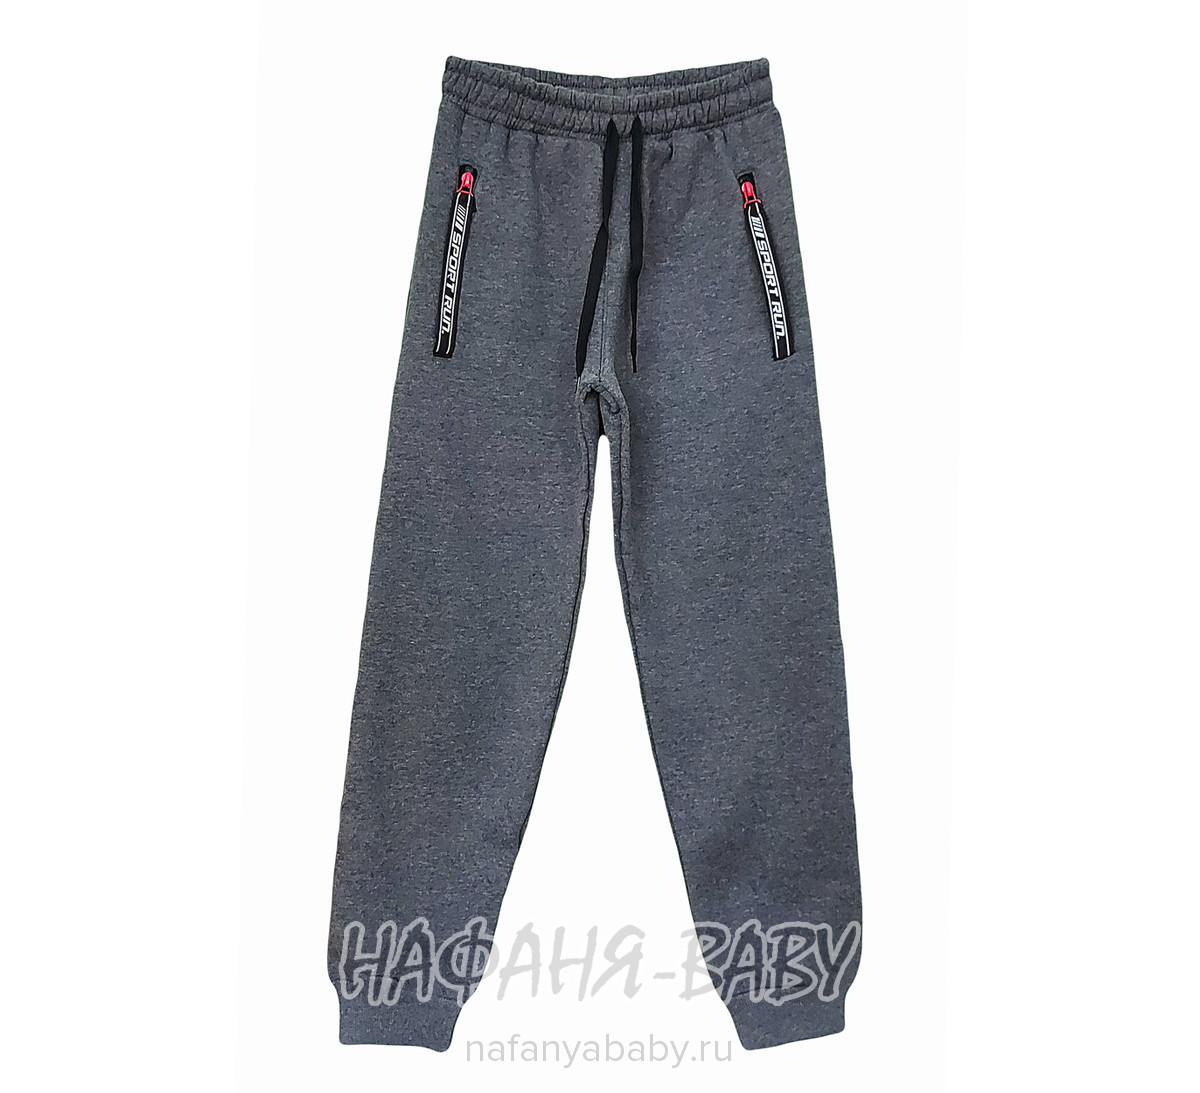 Теплые брюки с начесом ILDES, купить в интернет магазине Нафаня. арт: 4962.